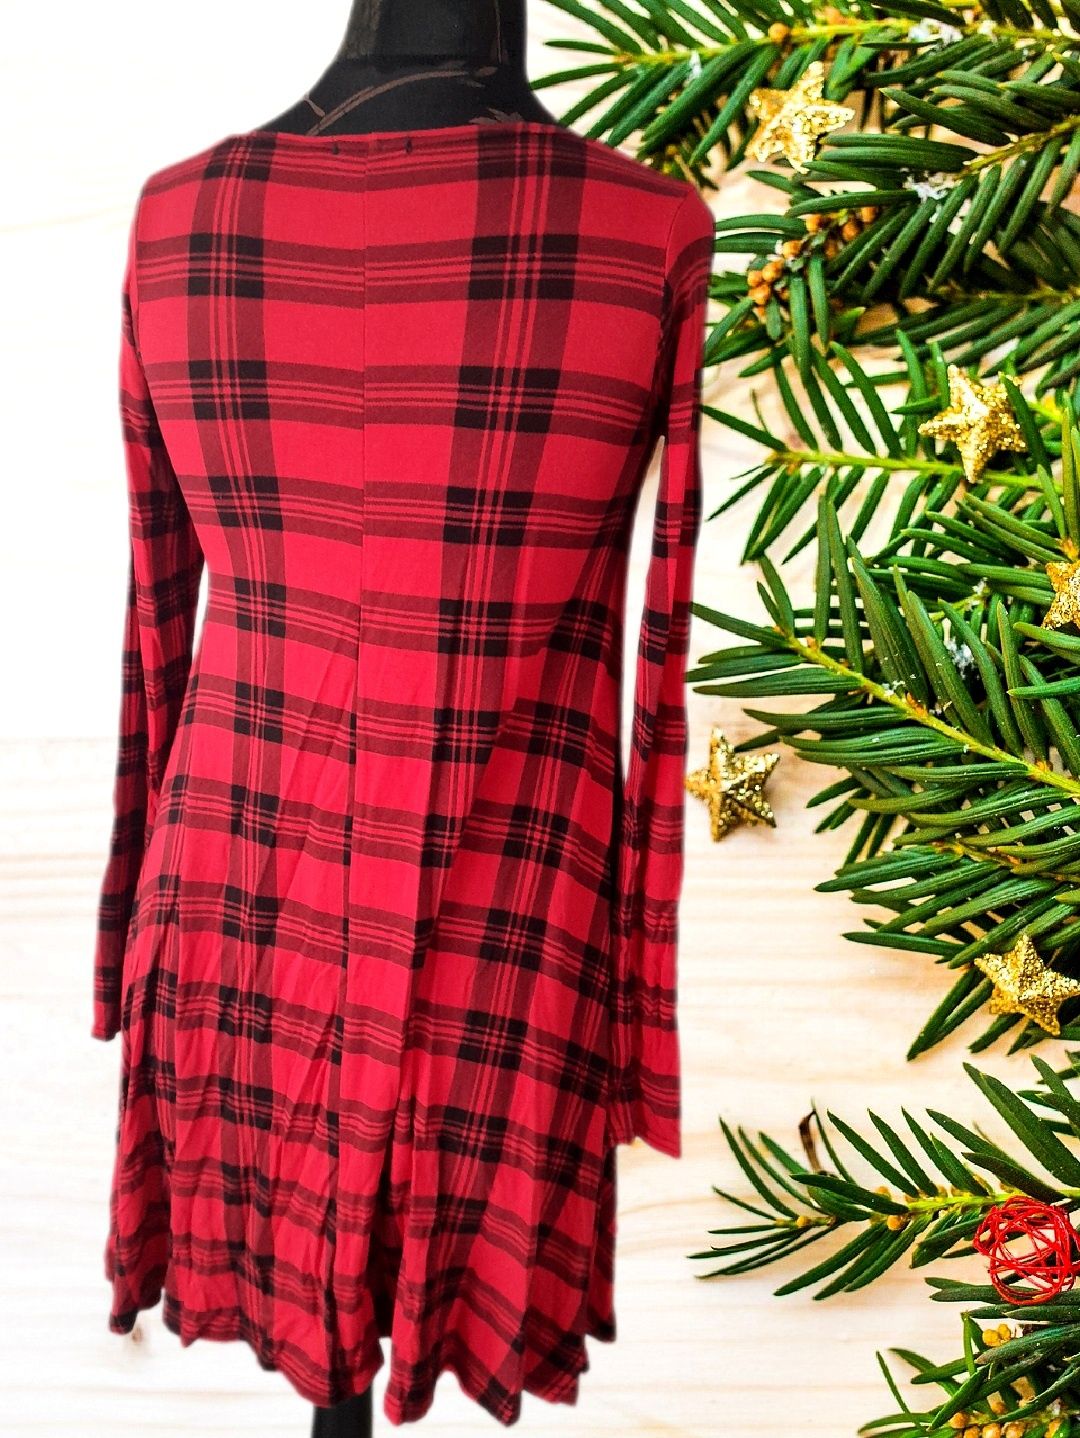 Sukienka tunika czerwona krata świąteczna święta S 36